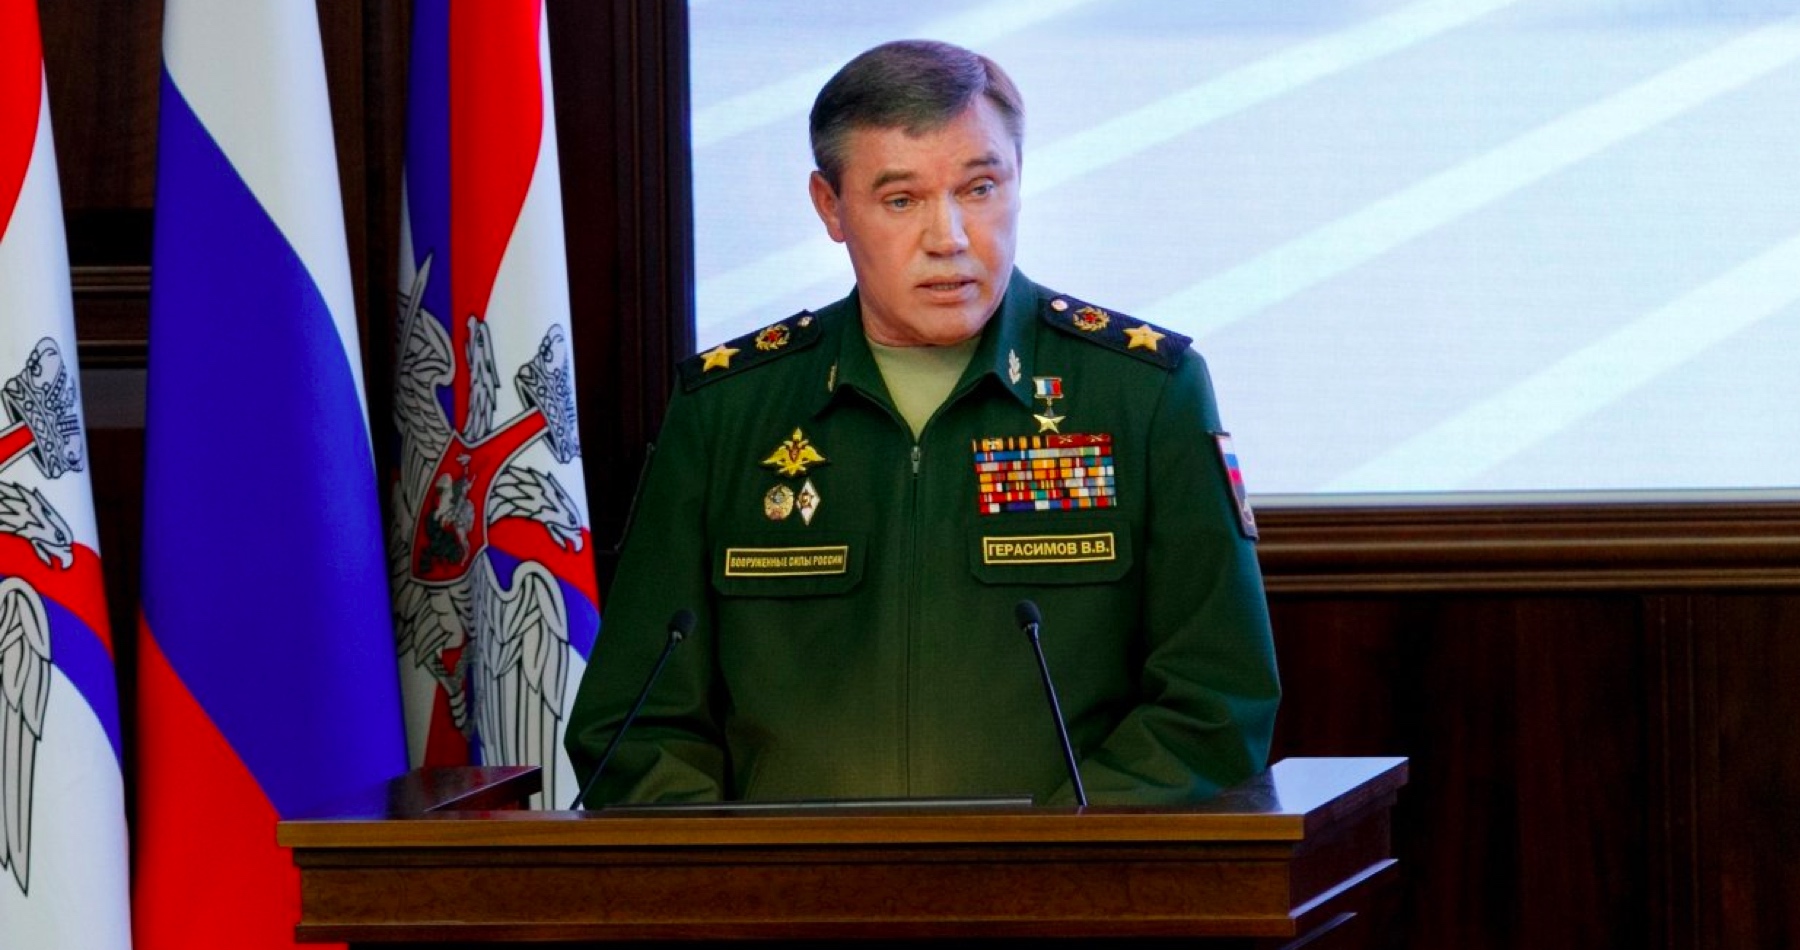 Ruská armáda potrebuje veľké reformy, čelíme prakticky celému Západu, vyhlásil náčelník generálneho štábu ruskej armády Valerij Gerasimov